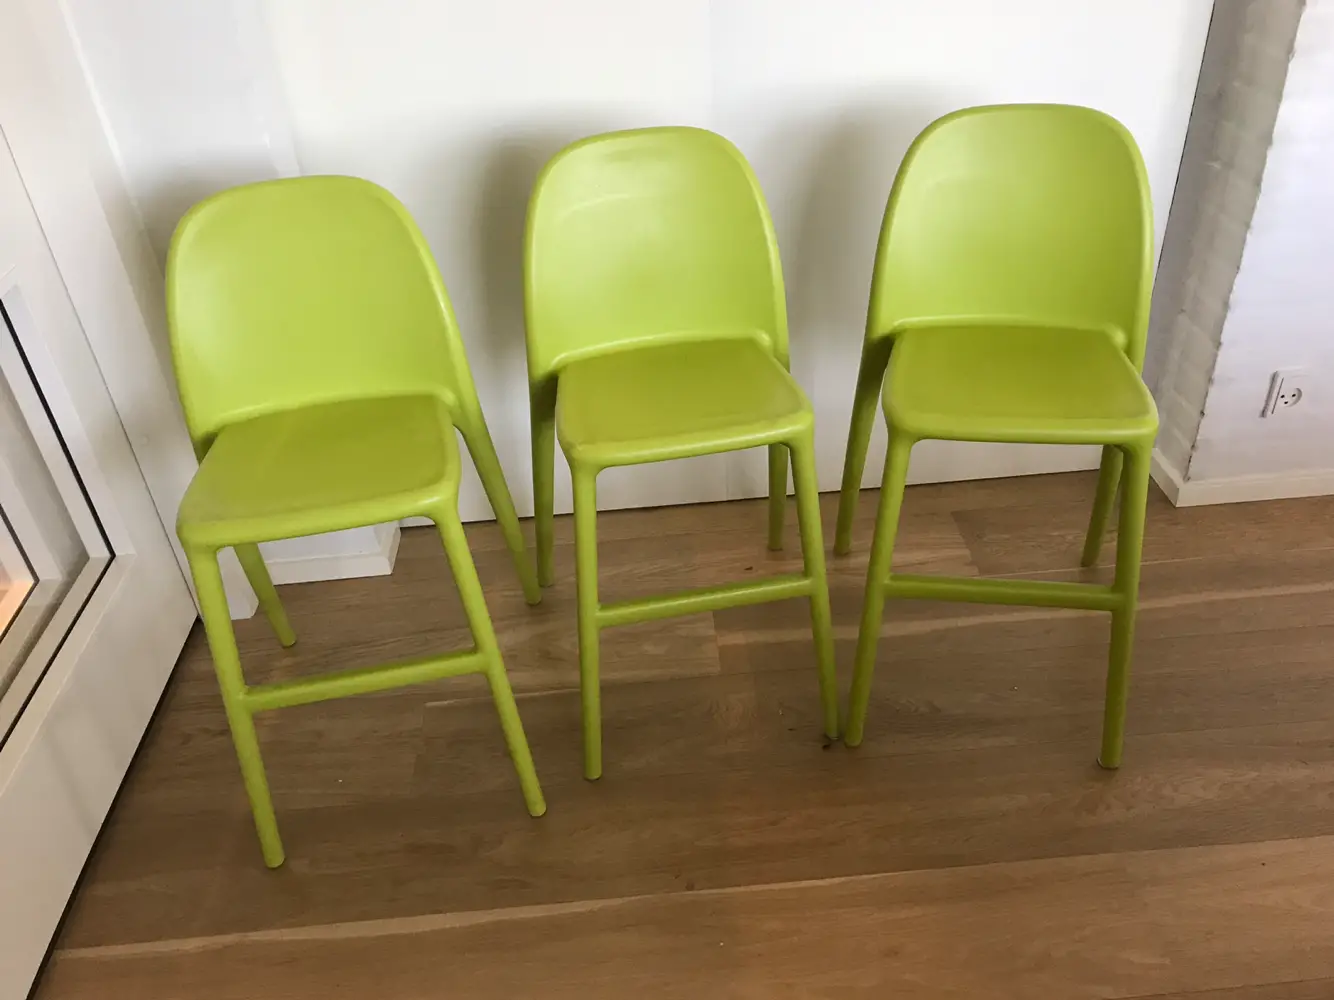 Køb IKEA Urban junior stol af Maria på Reshopper · Shop til børn, og bolig